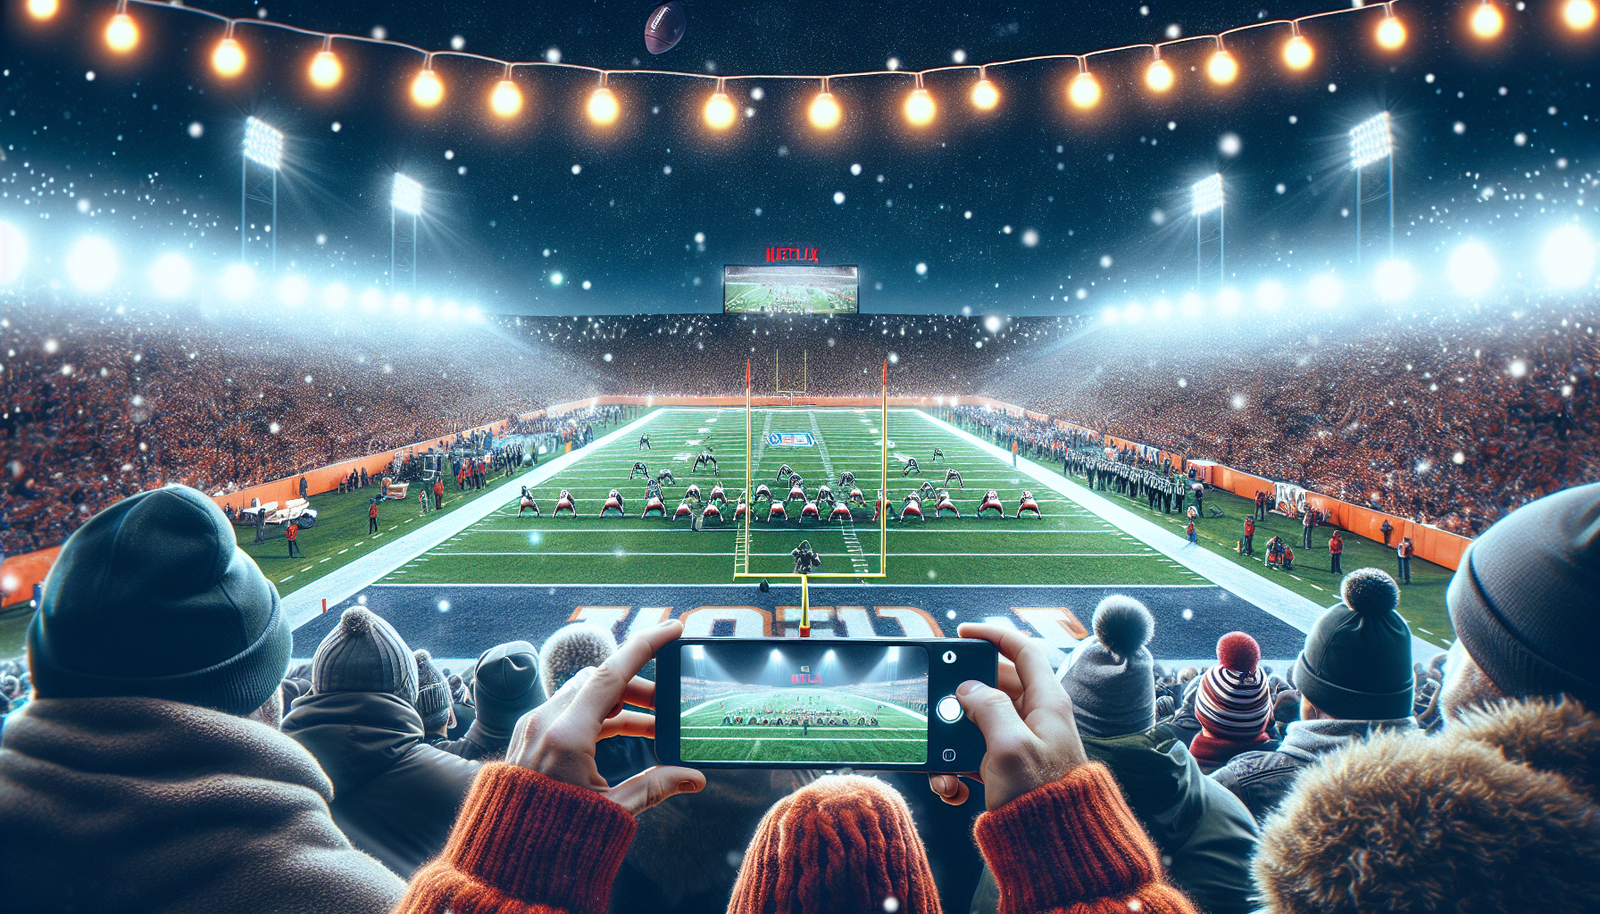 découvrez si Netflix pourrait devenir la destination inattendue pour les matchs de Noël de la NFL dans cet article qui suscite la réflexion.